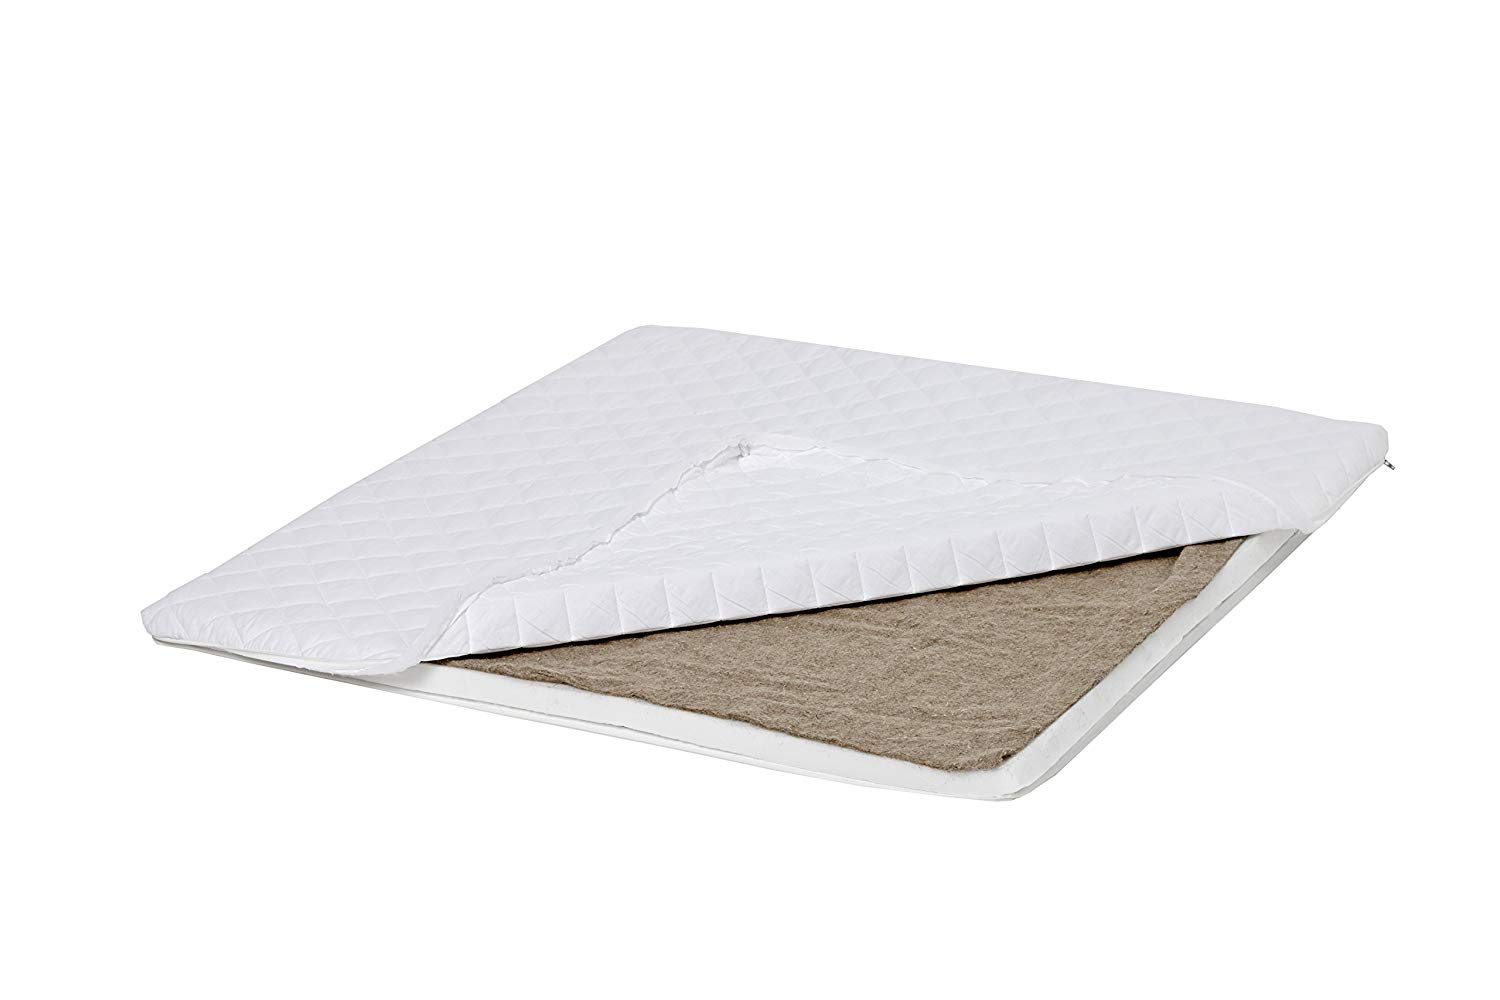 White Hoppekids Foam Mattress Surface Single 86 x 80 x 3 cm Flax is 100% Natural Material 